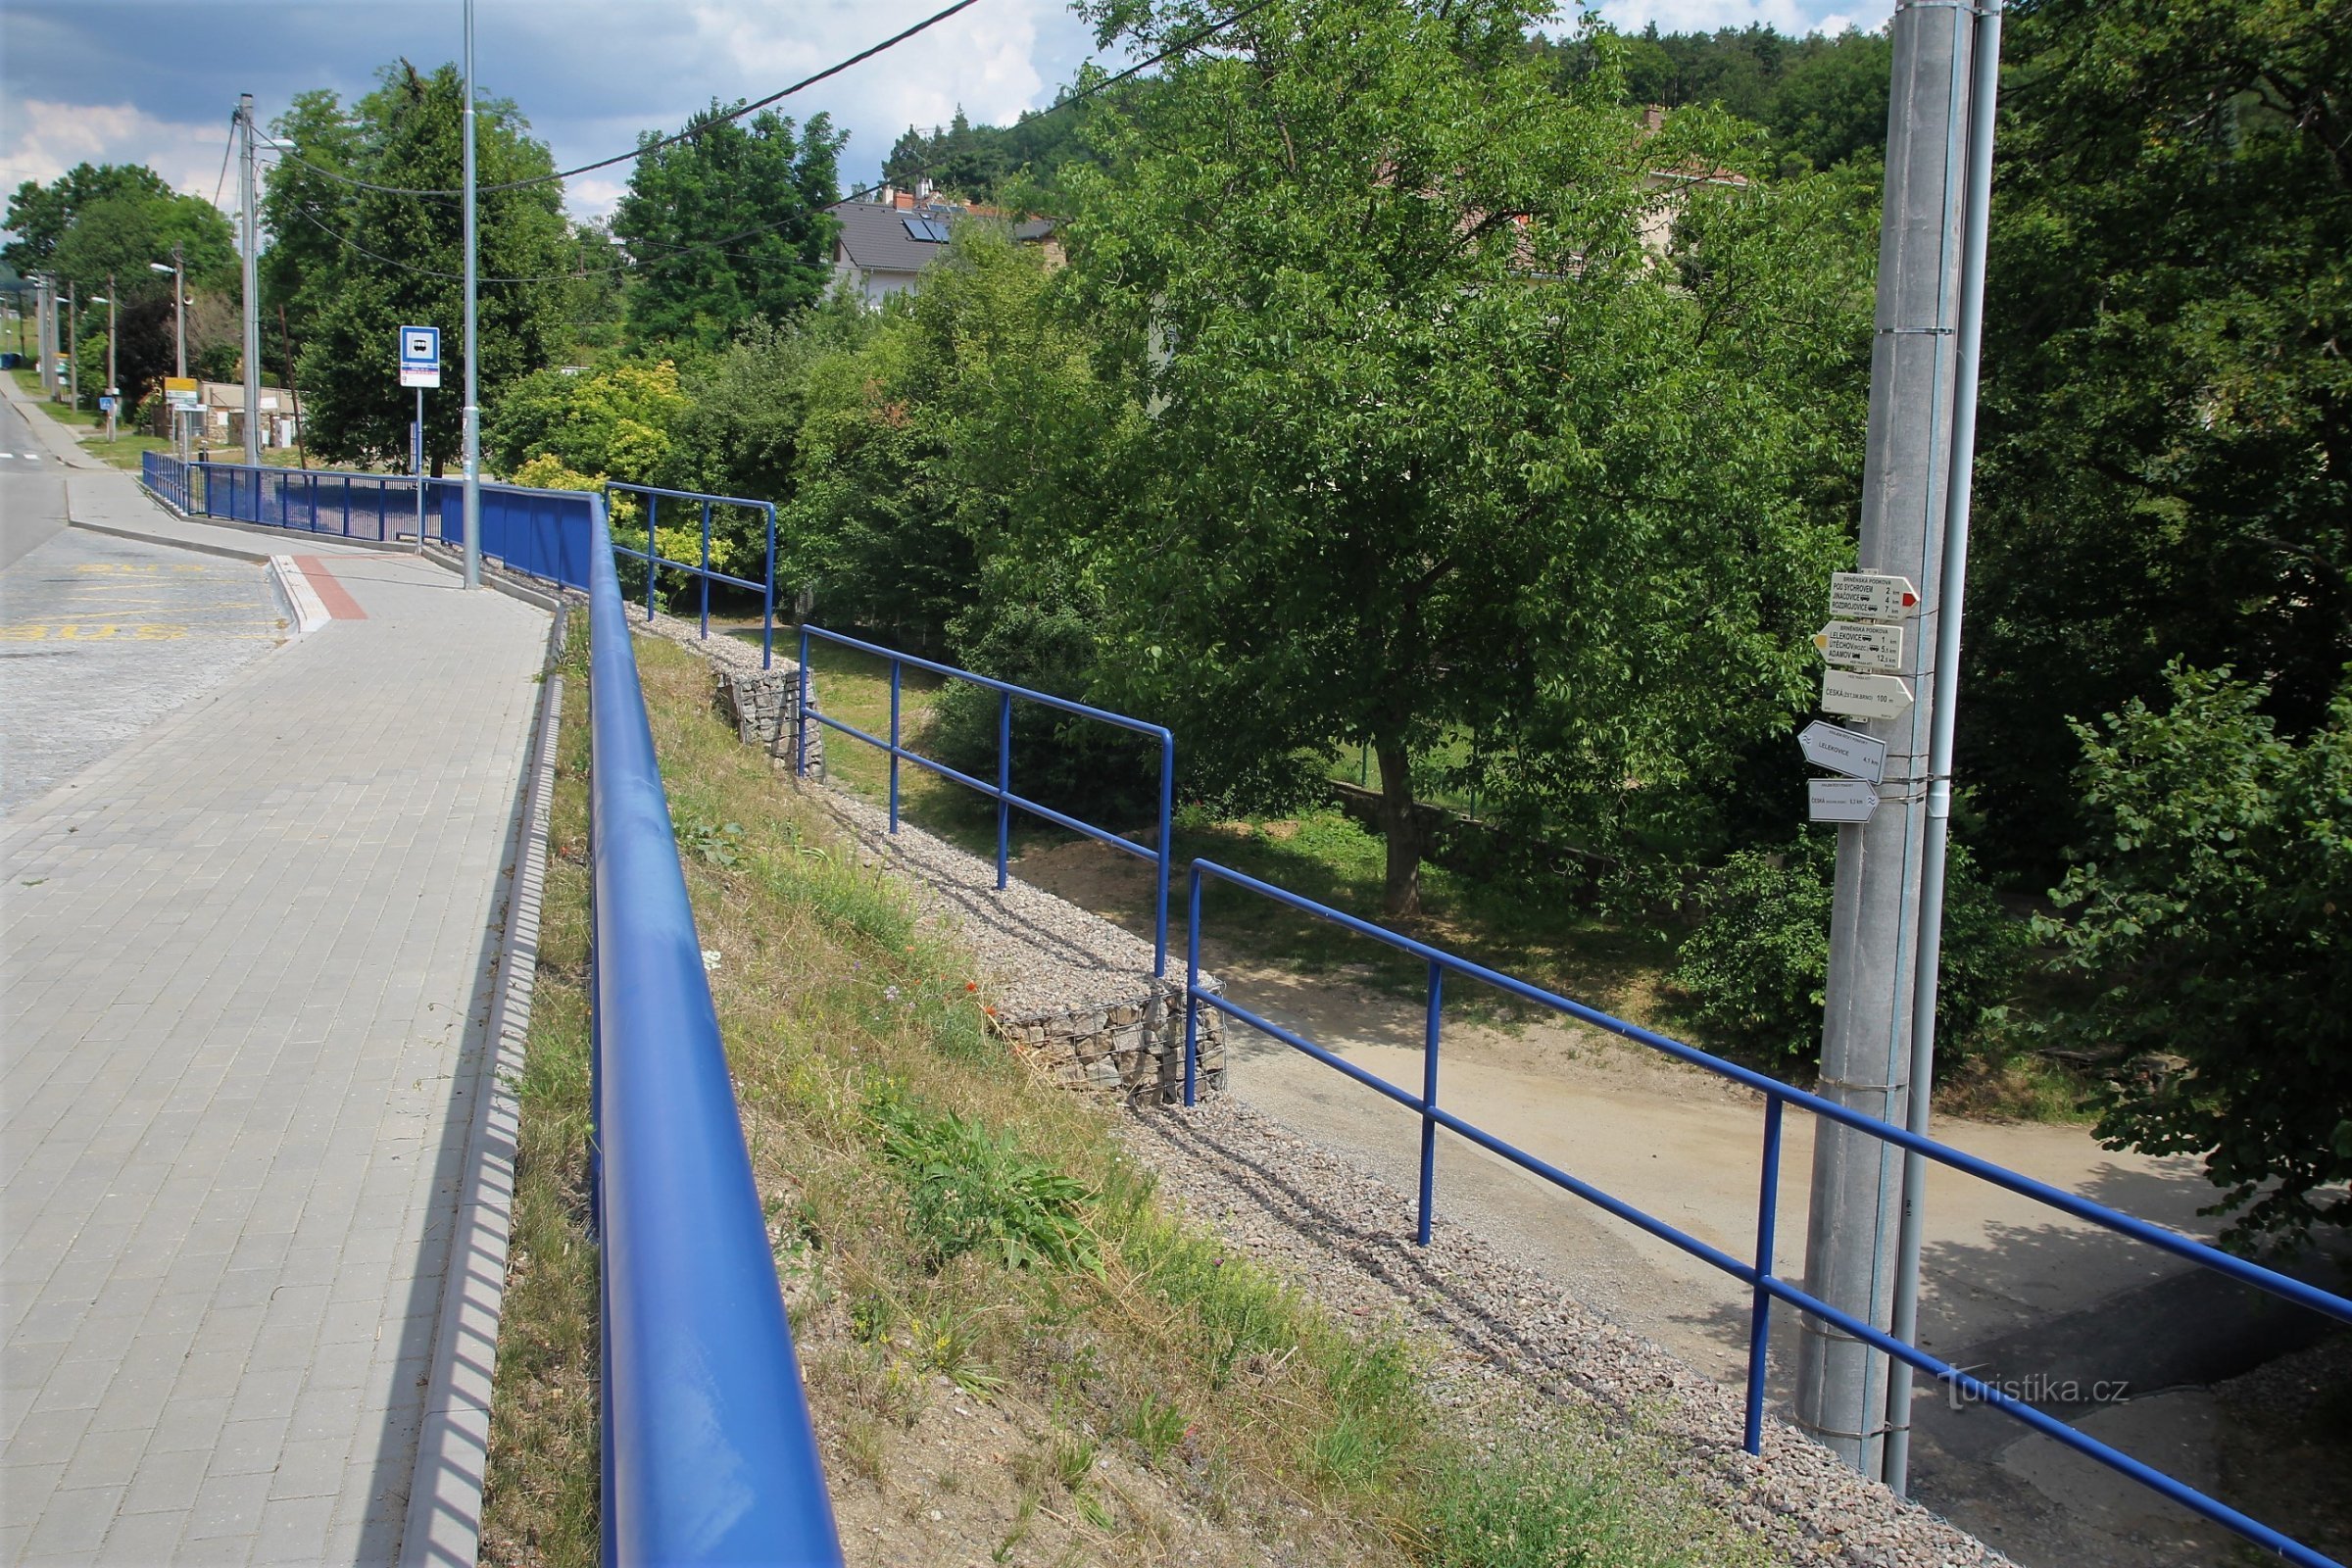 Τουριστική διασταύρωση Česká, σιδηροδρομικός σταθμός